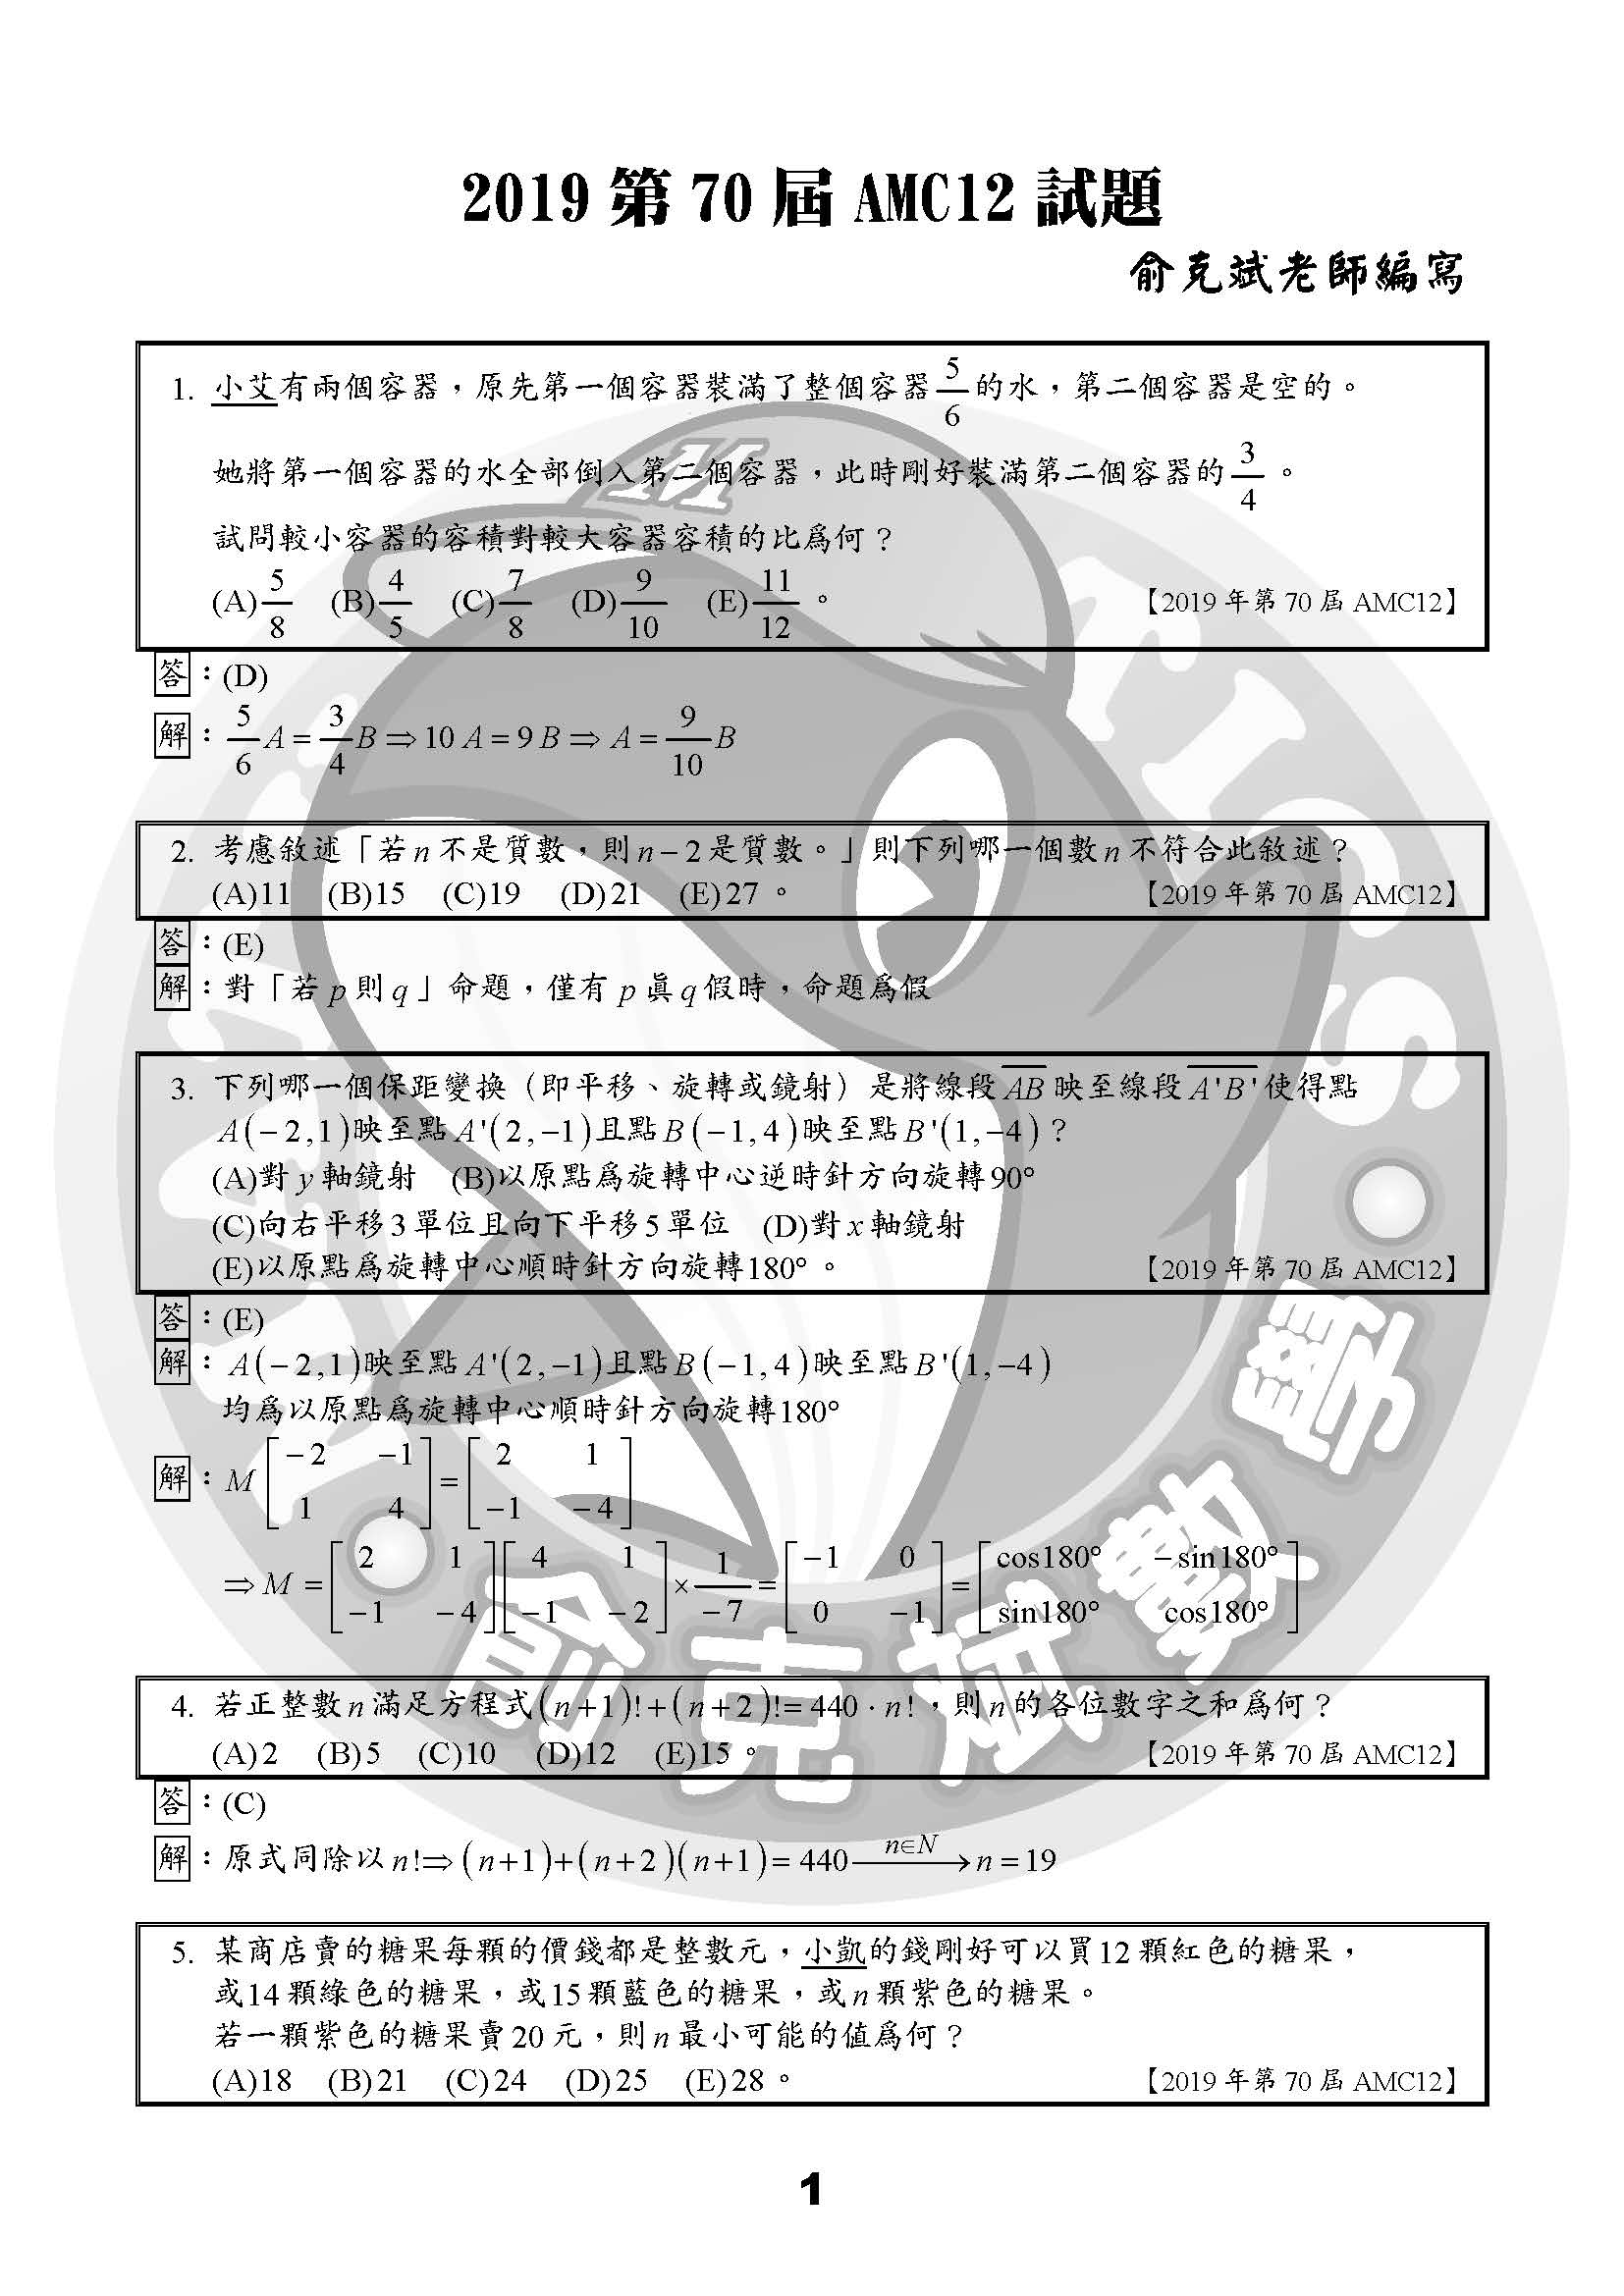 2019第70屆AMC12試題+詳解（俞克斌老師）_頁面_1.jpg